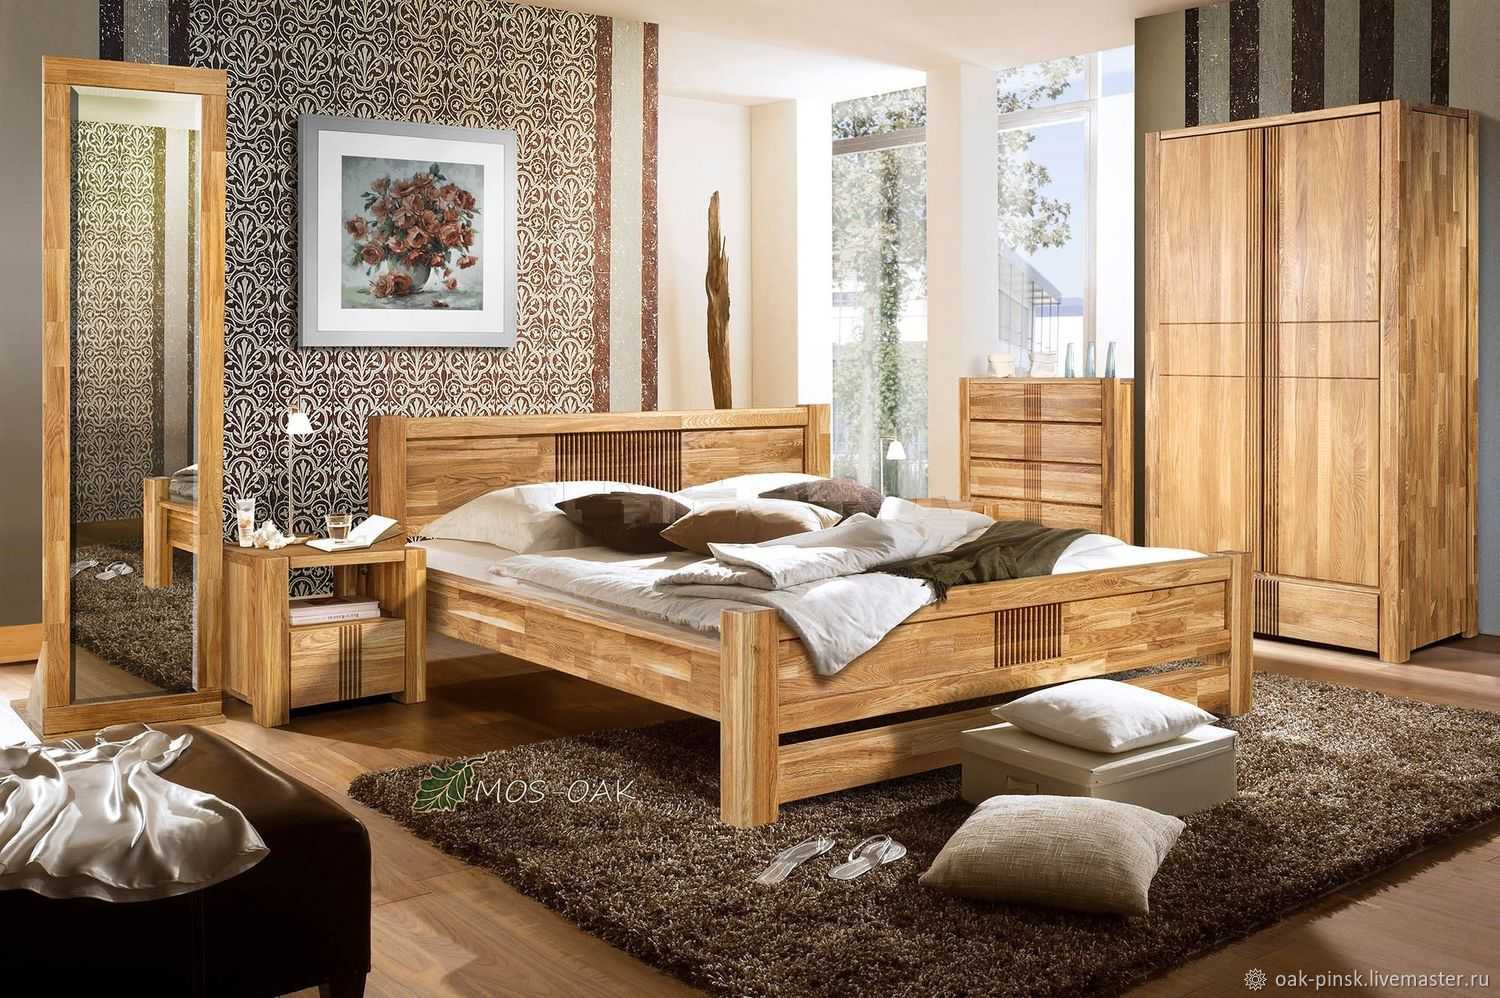 Мебель из древесины: главные преимущества и недостатки